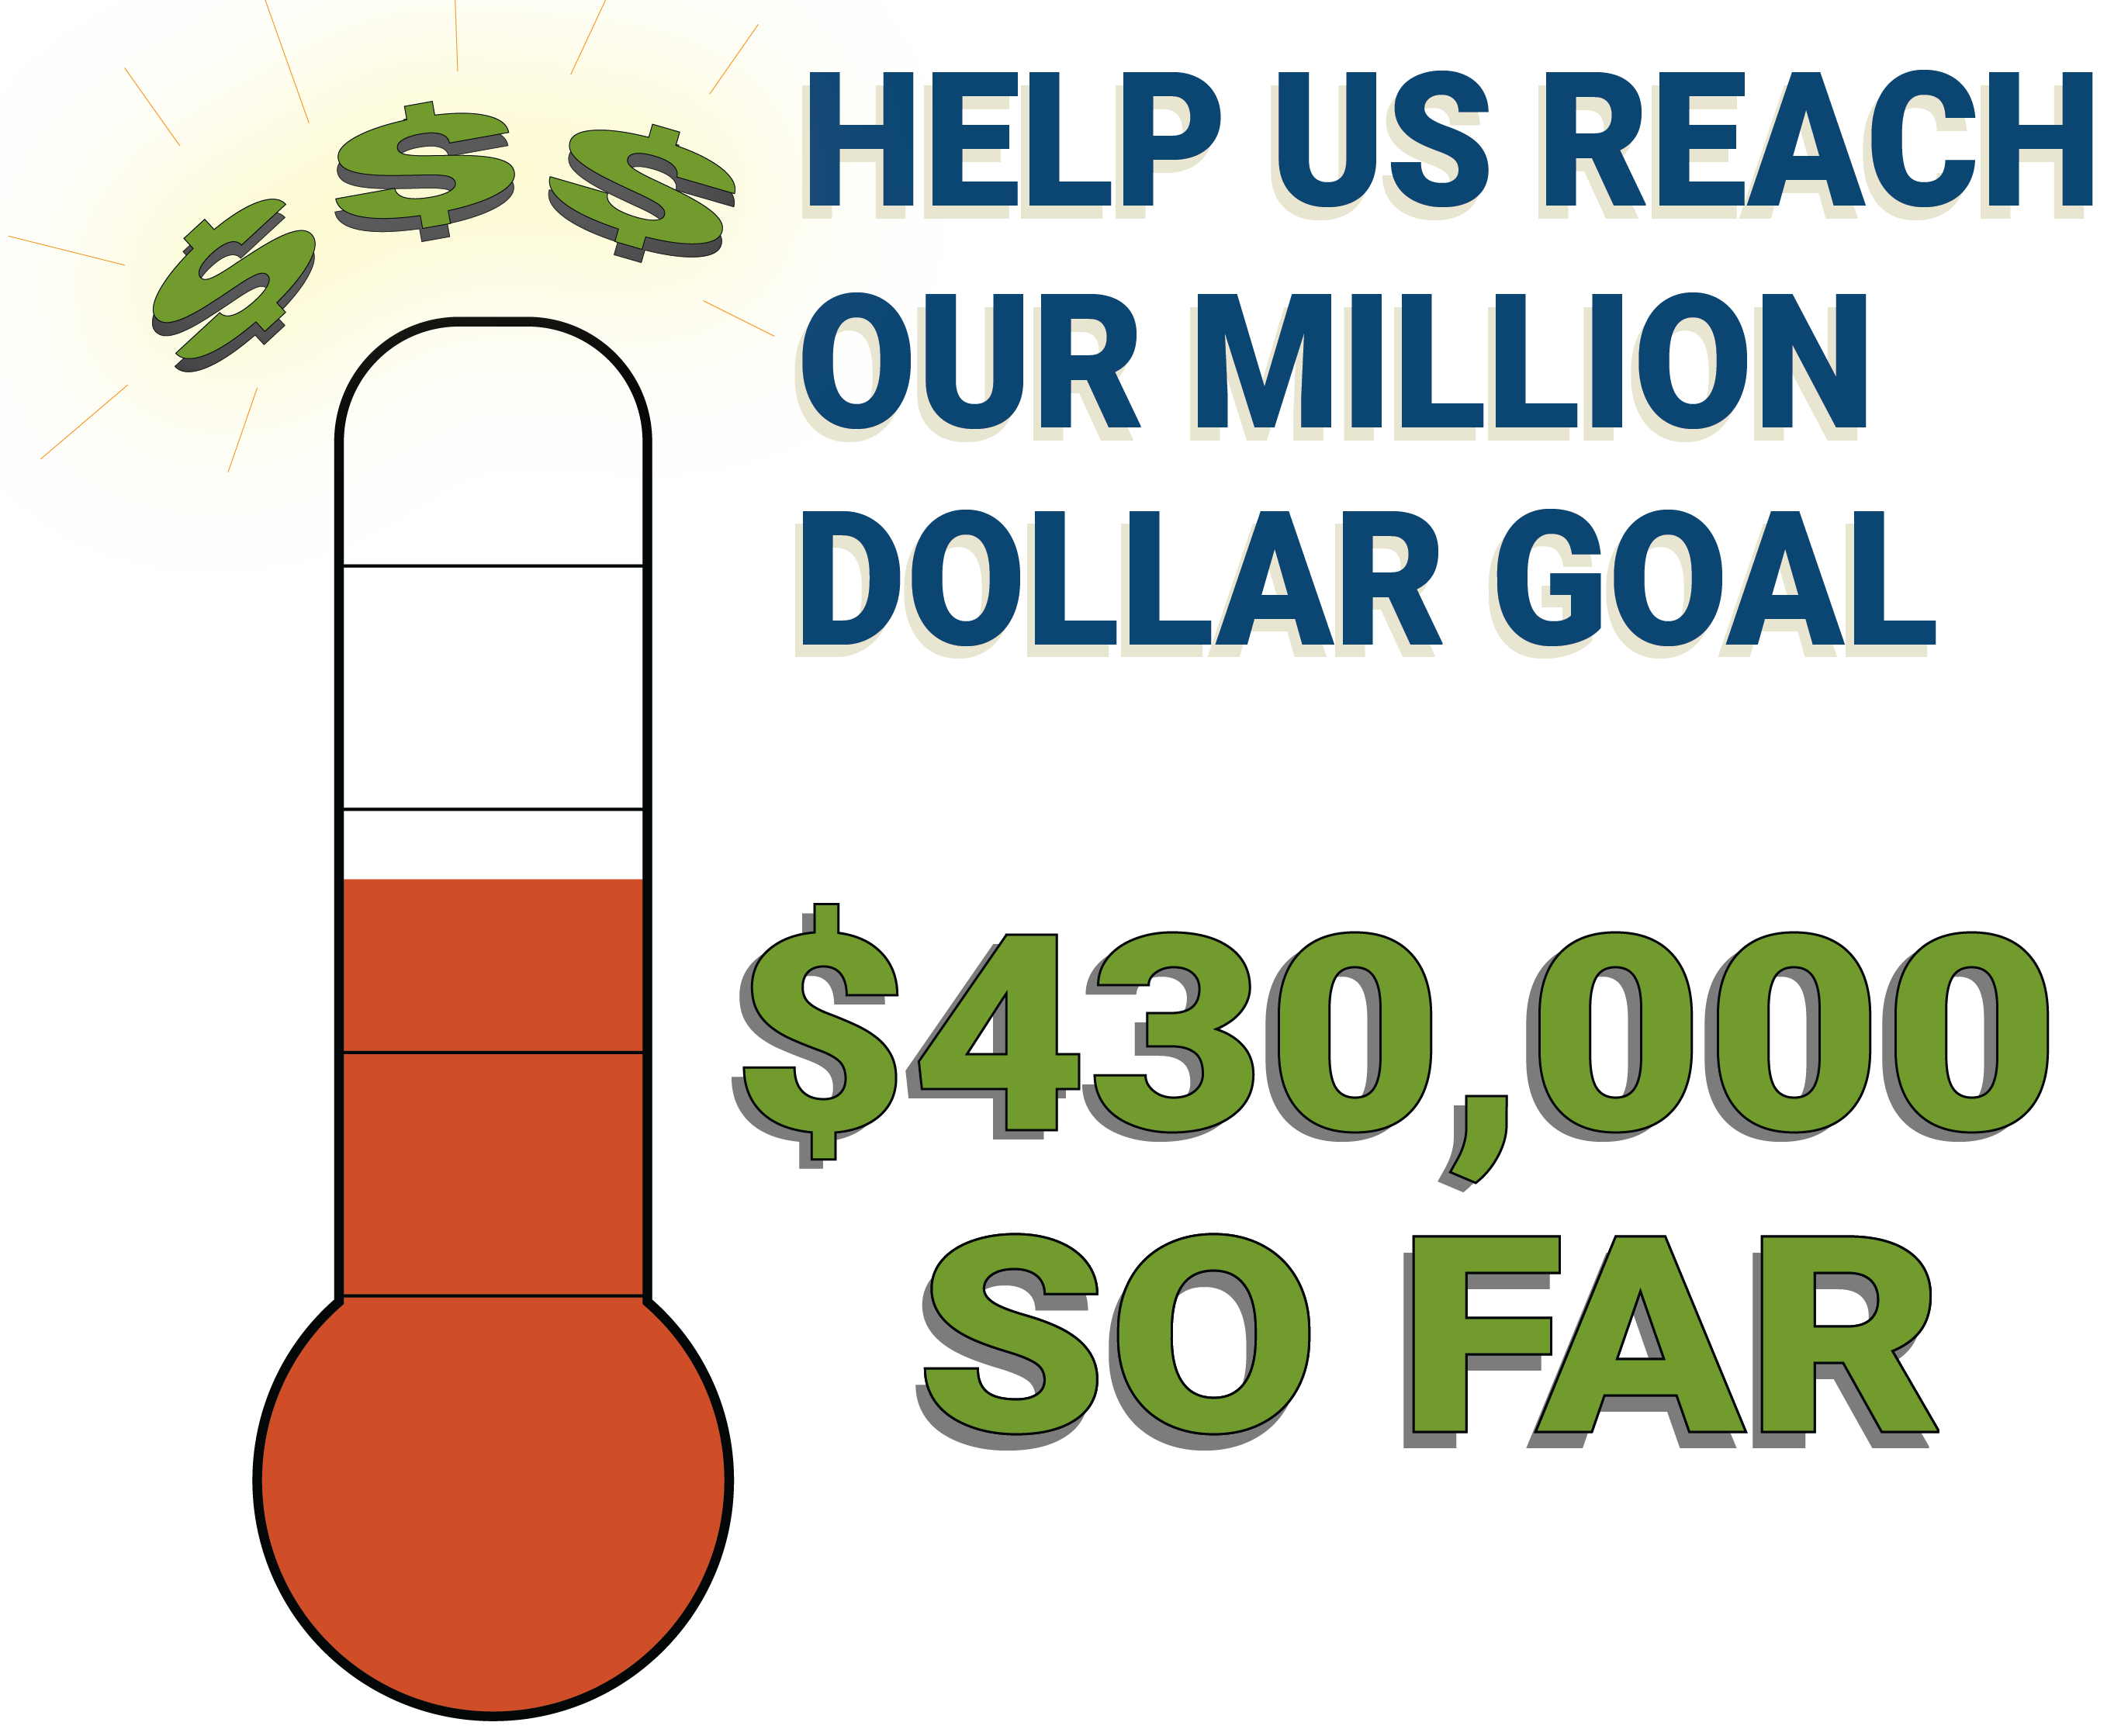 Help us reach our million dollar goal! $430,000 so far!